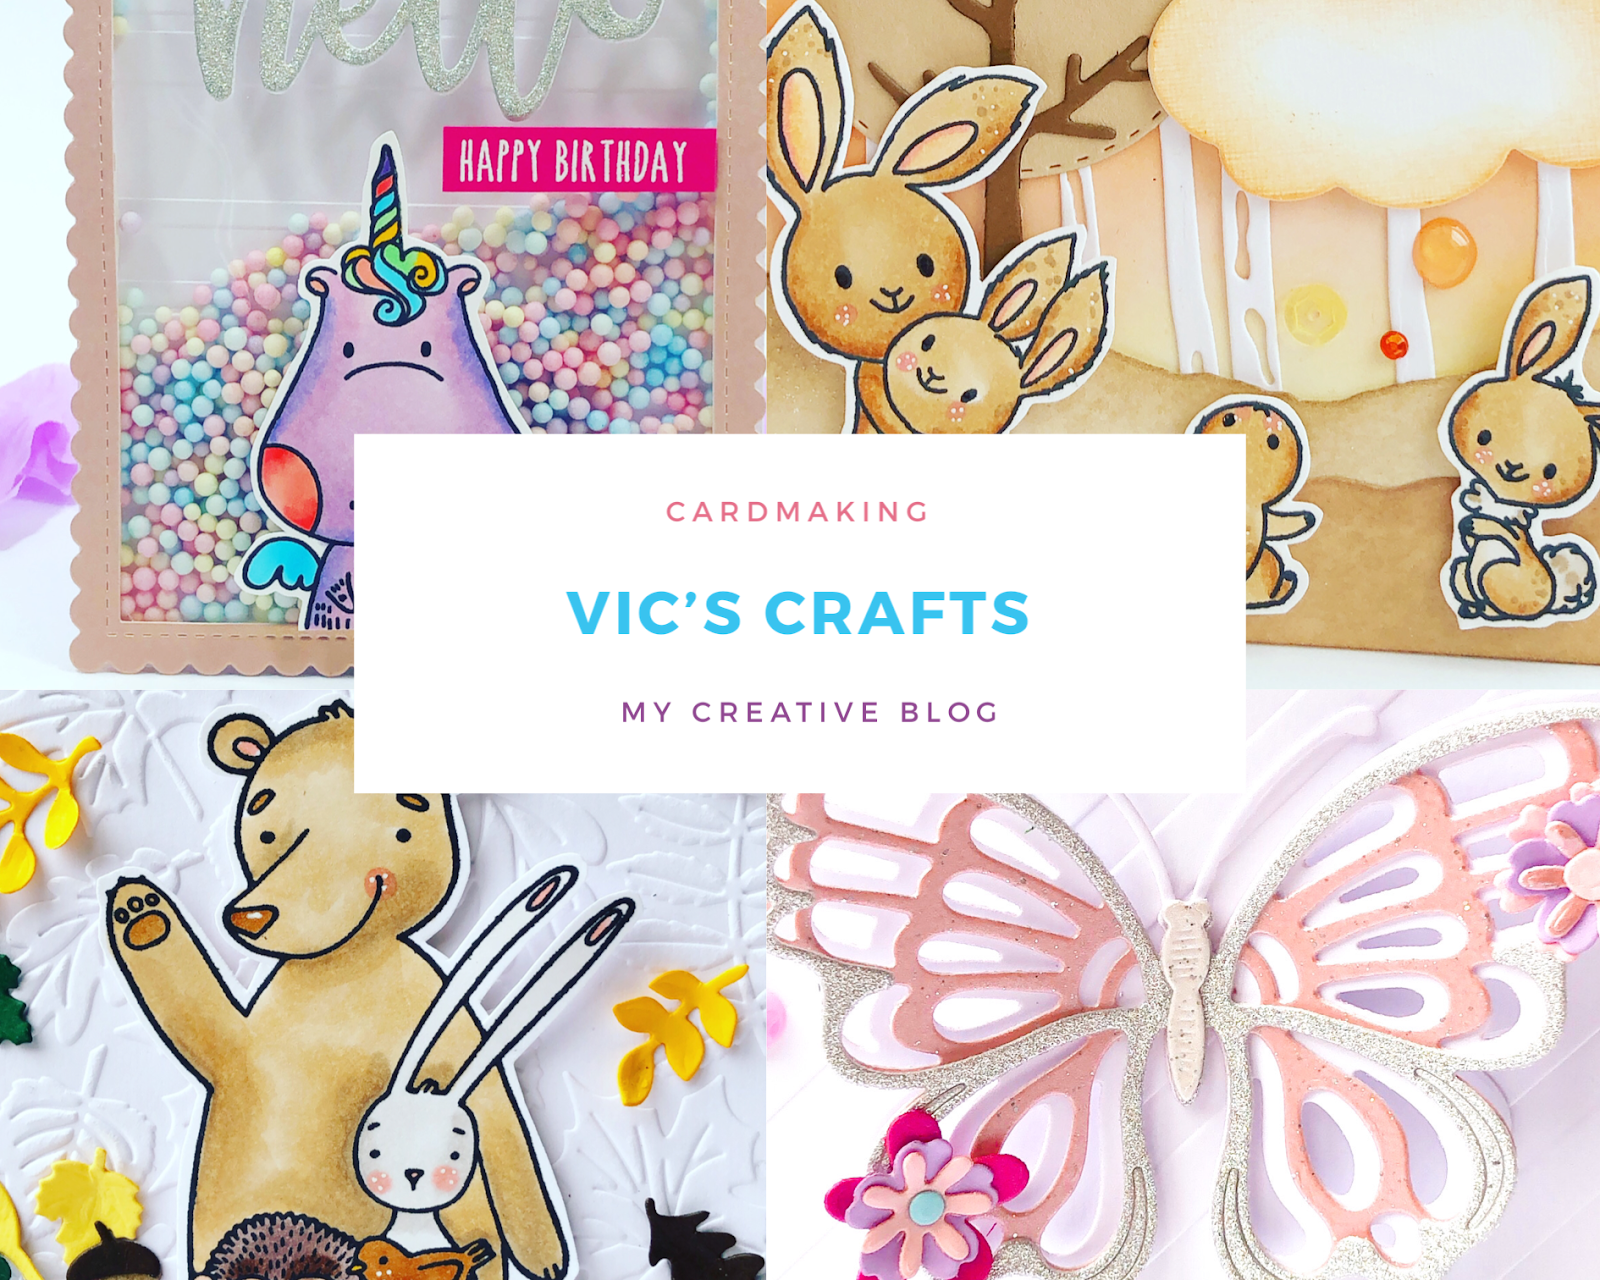 Vics crafts